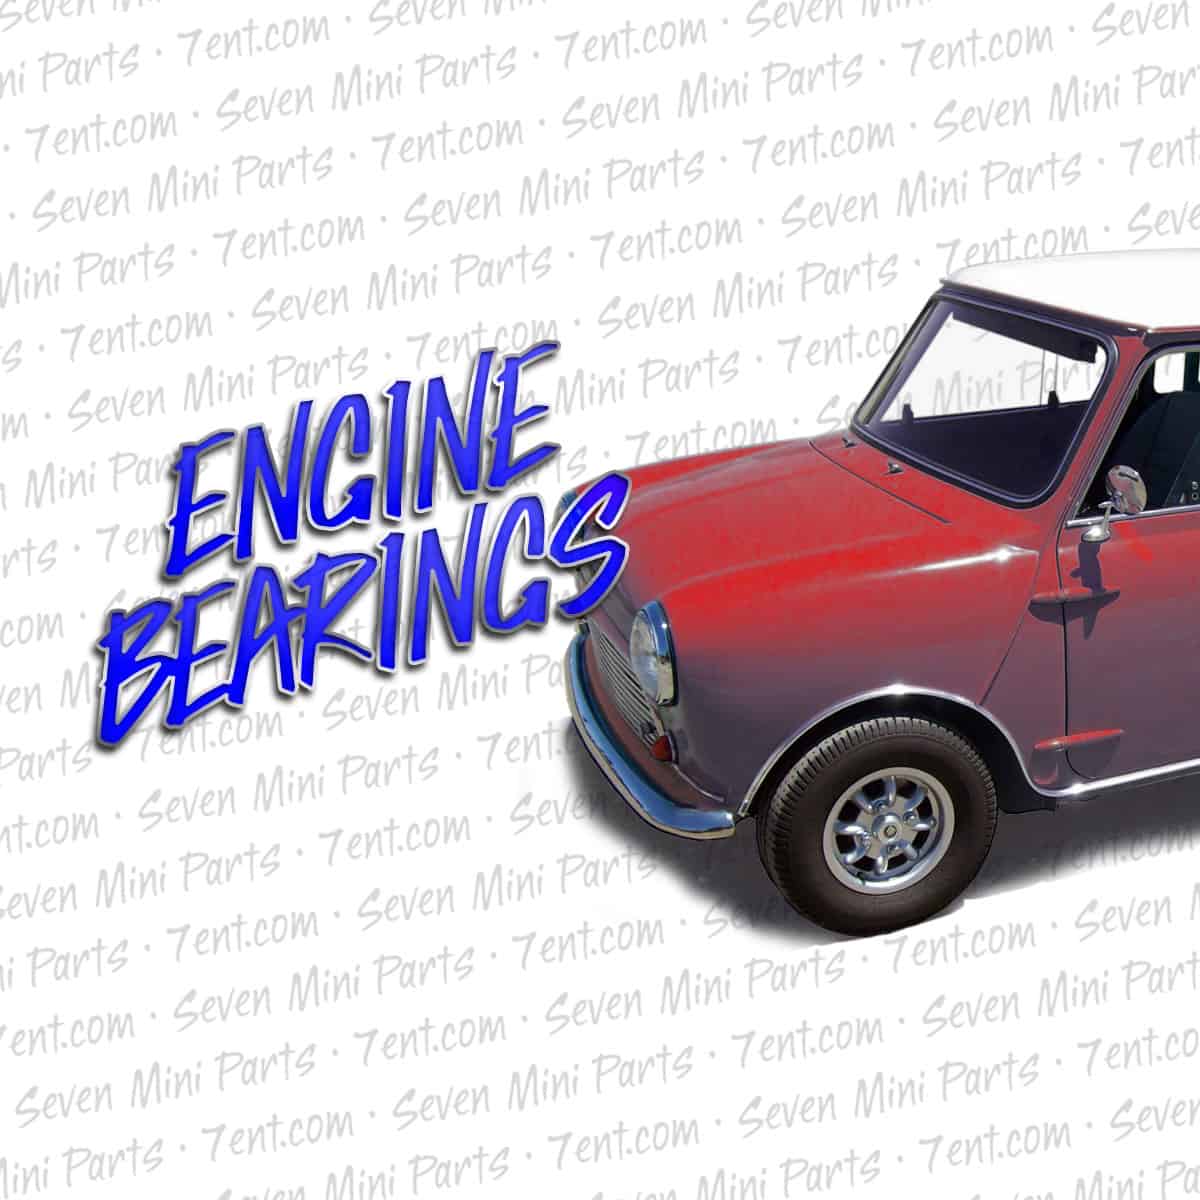 Engine Bearings | Classic Mini | Seven Mini Parts